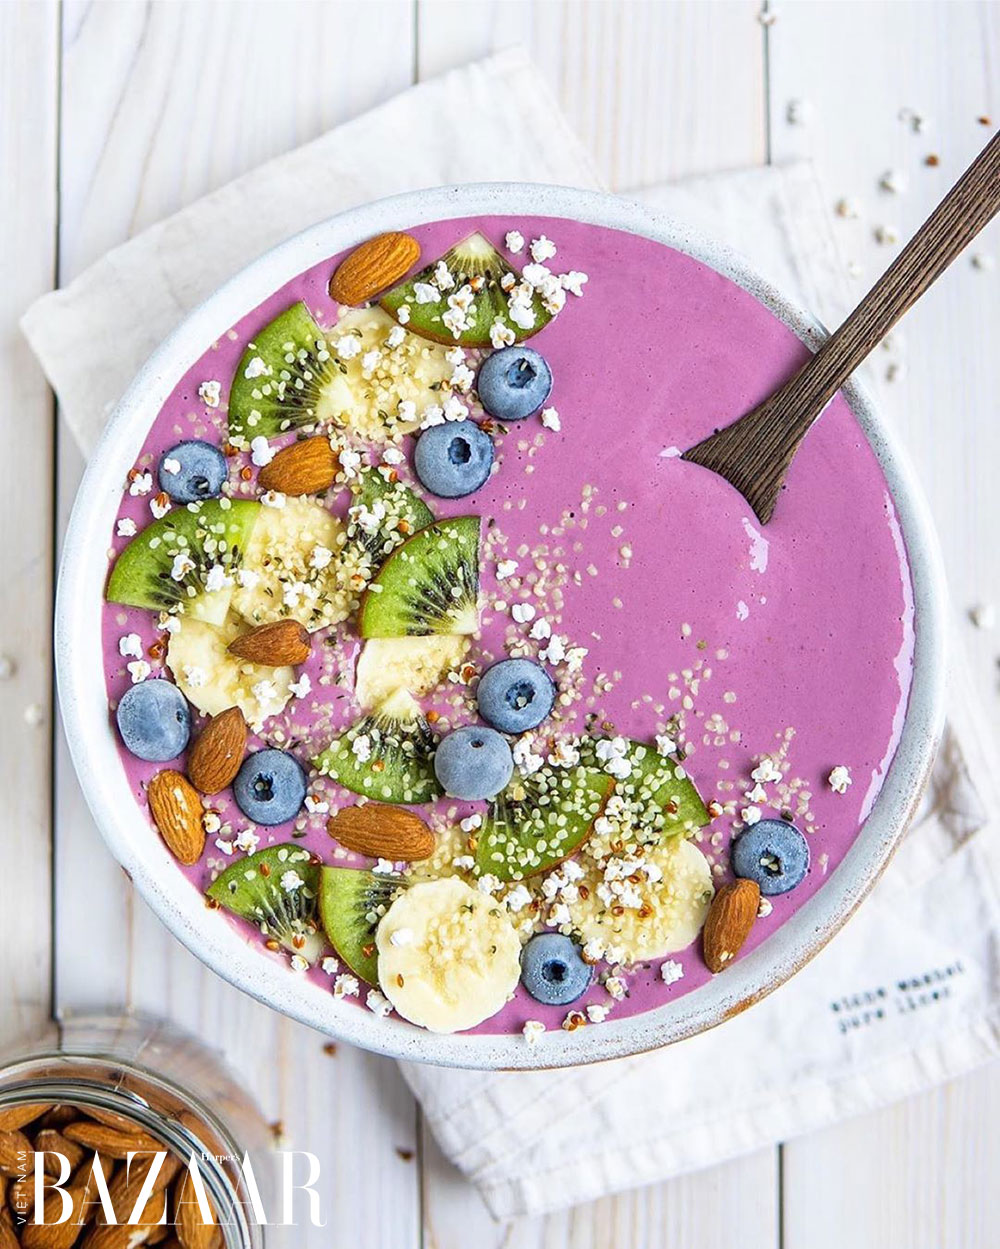 sinh to smoothie bowl banana kiwi berry Instagram fitomatoes - Siêu thực phẩm là gì và ăn bao nhiêu là đủ để detox?